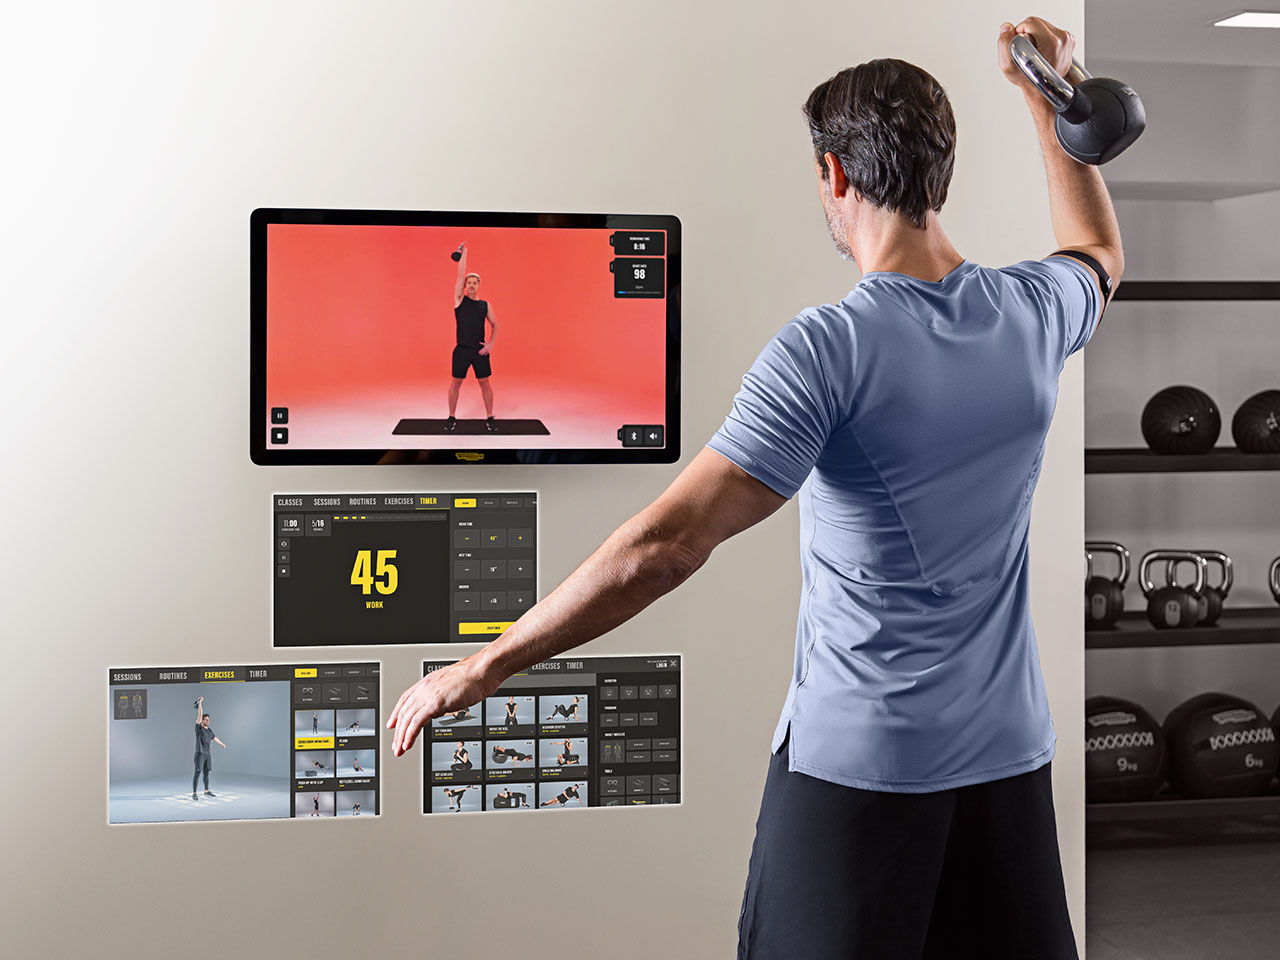 Gym techie: Entrenamiento vía app y ¡cascos de realidad virtual